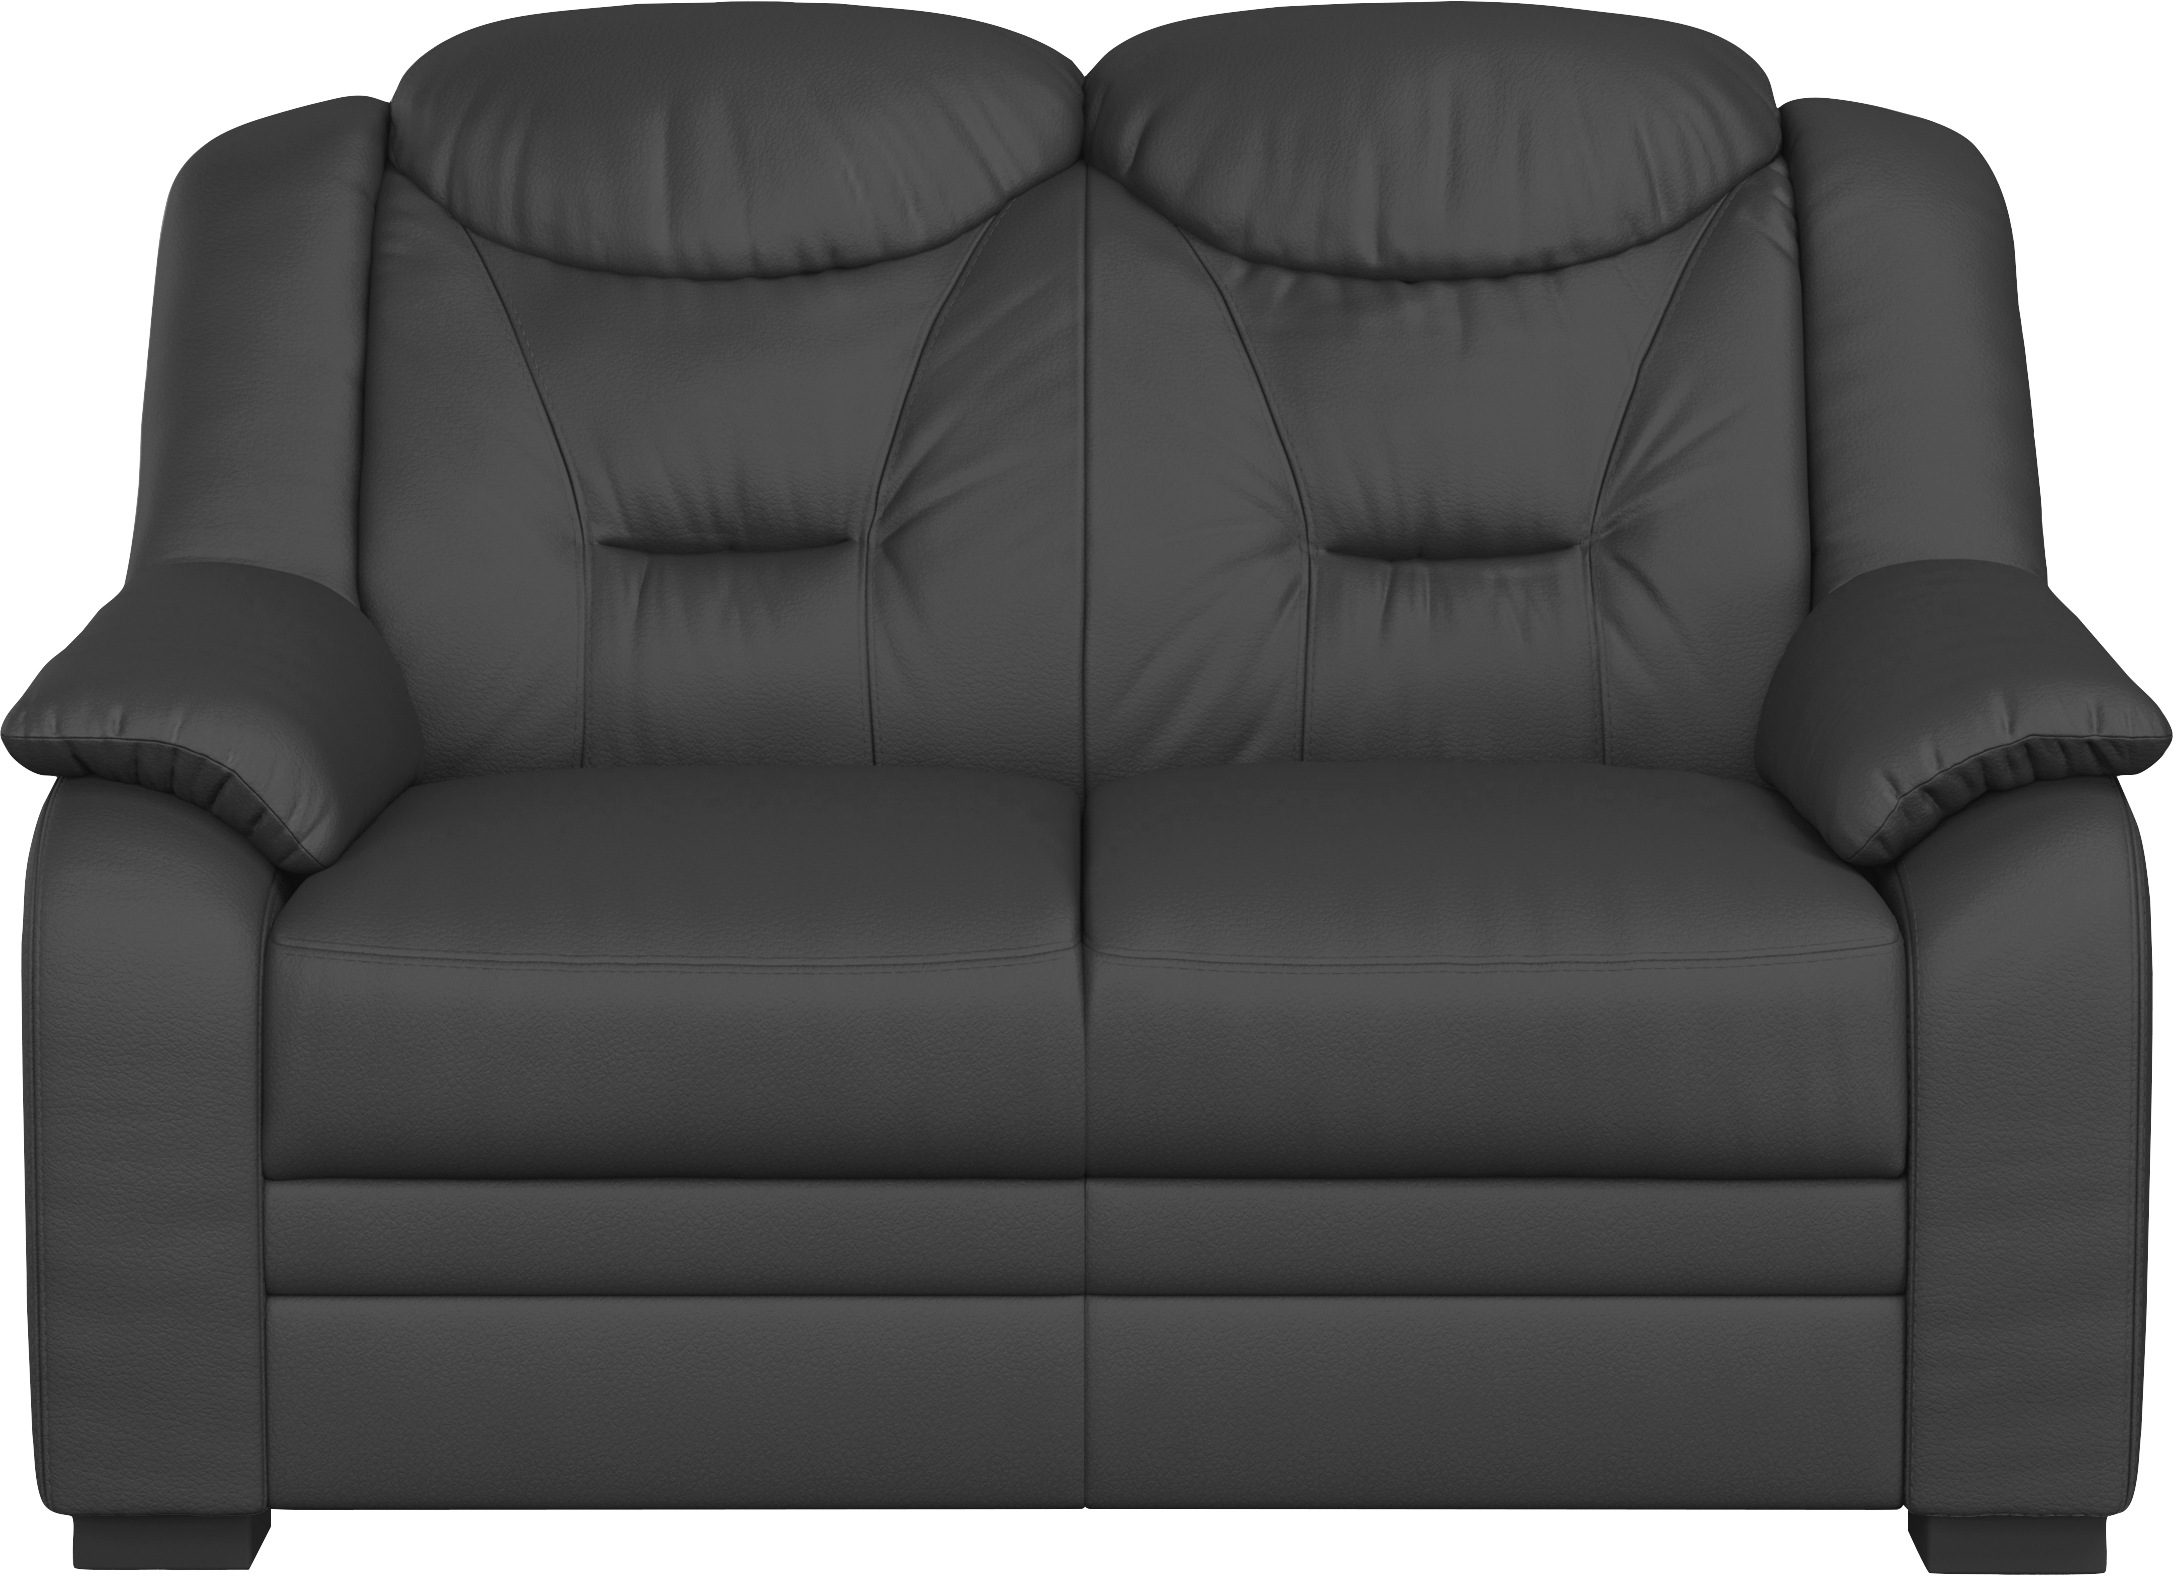 COTTA 2-Sitzer »Marcus«, Bequemer 2-Sitzer in klassischem Design mit hoher Rückenlehne